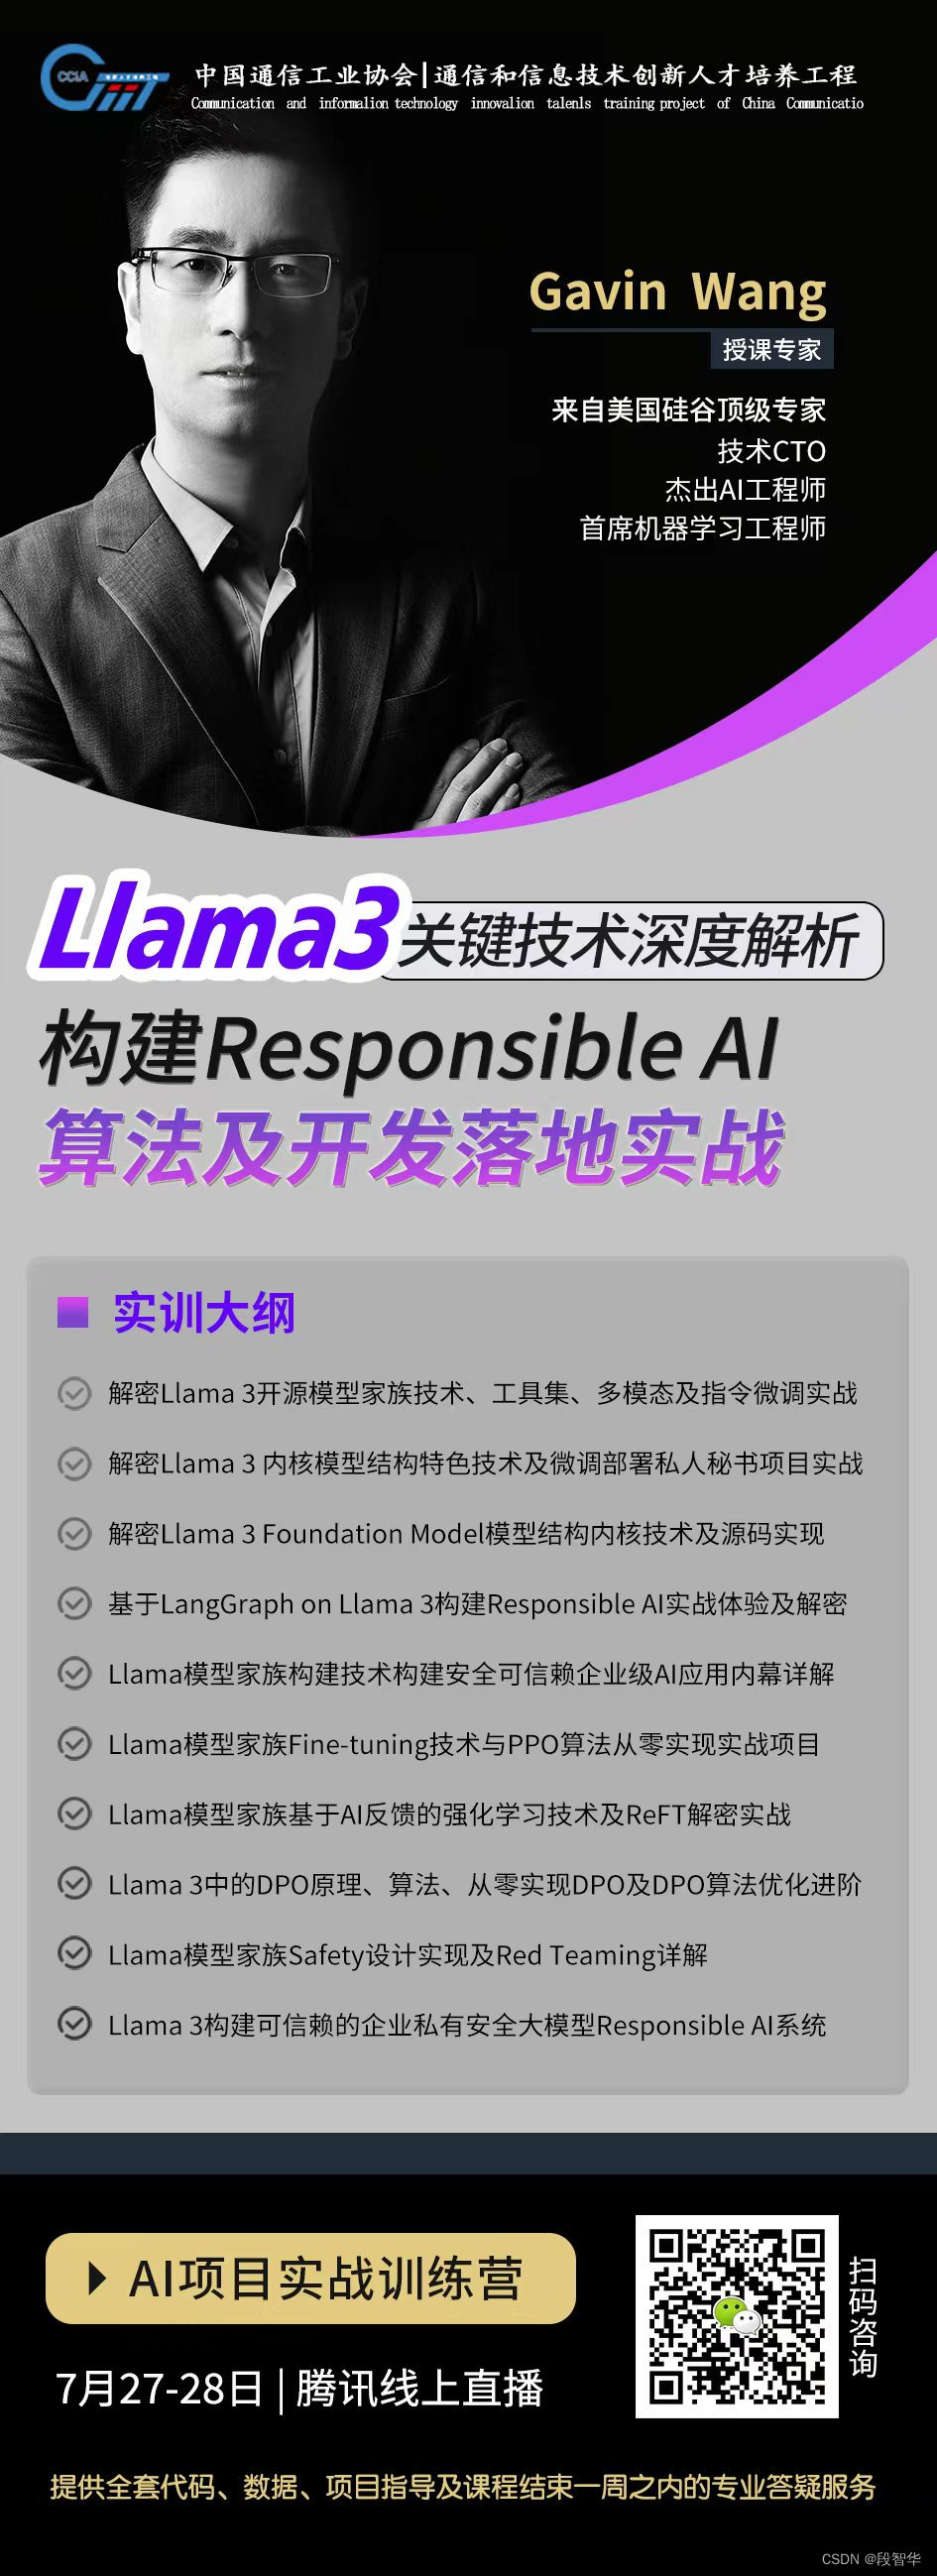 大模型微调之 在亚马逊AWS上实战LlaMA案例（七）